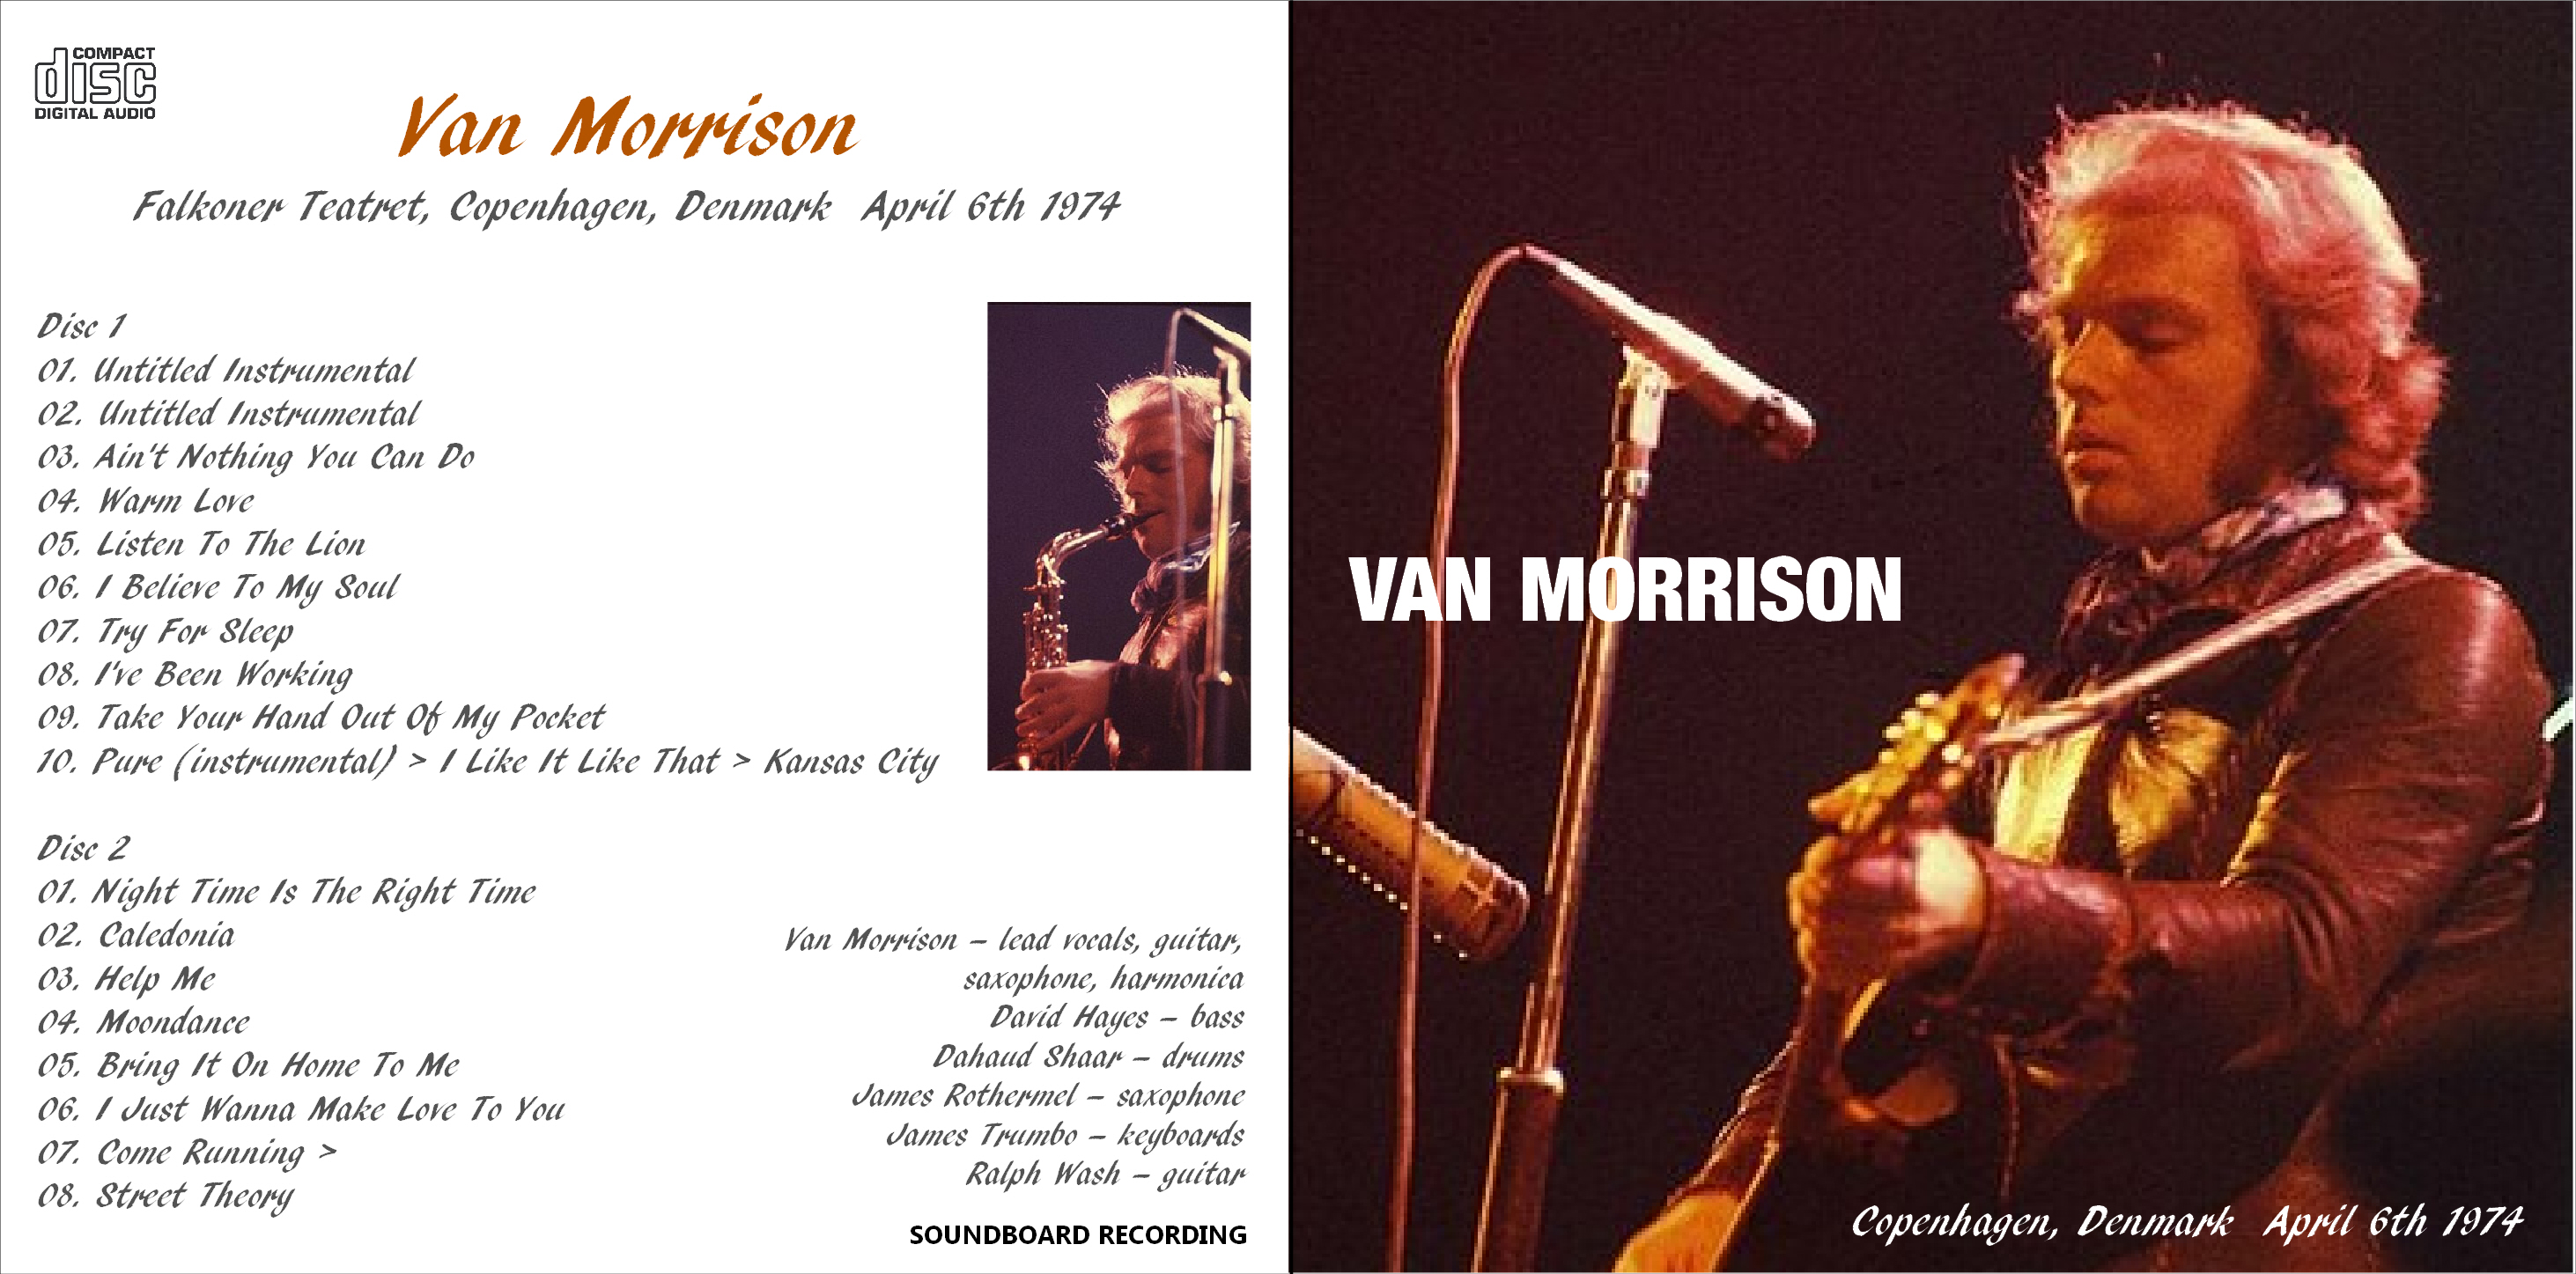 VanMorrison1974-04-06FalkonerTeatretCopenhagenDenmark (1).jpeg